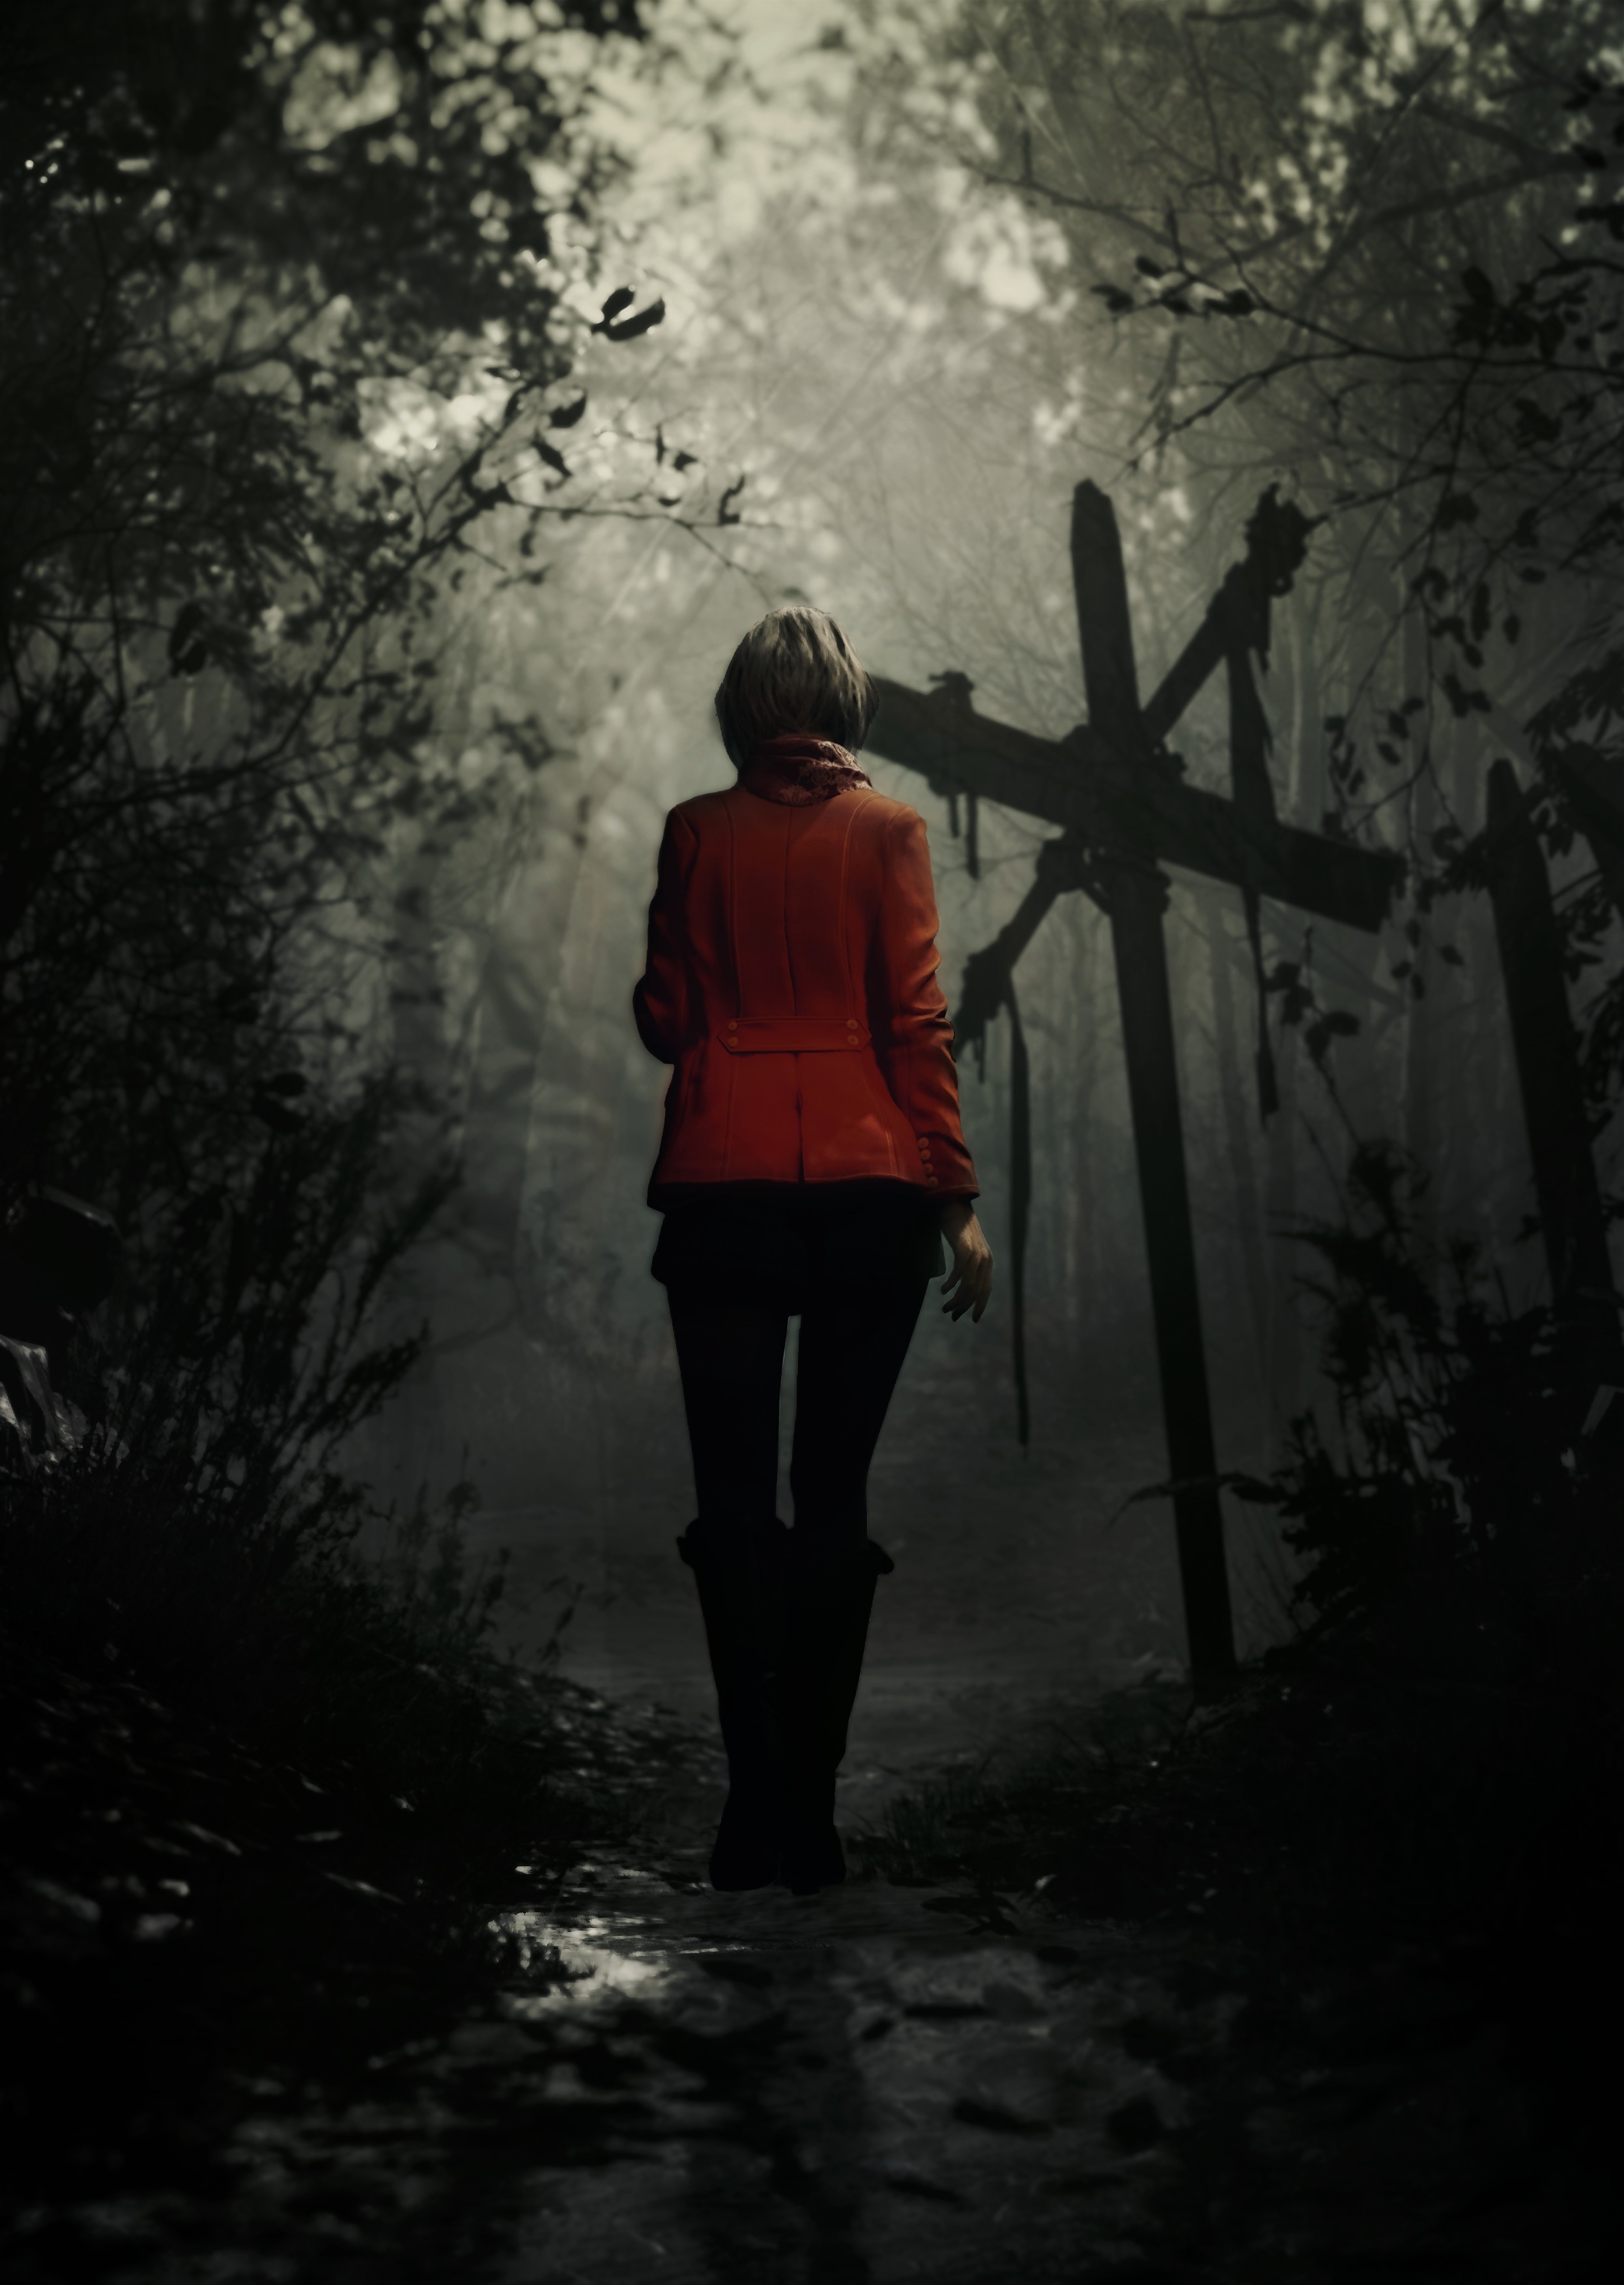 La sortie de Resident Evil 4 Remake où Leon et Ashley seront plongés dans les ténèbres.